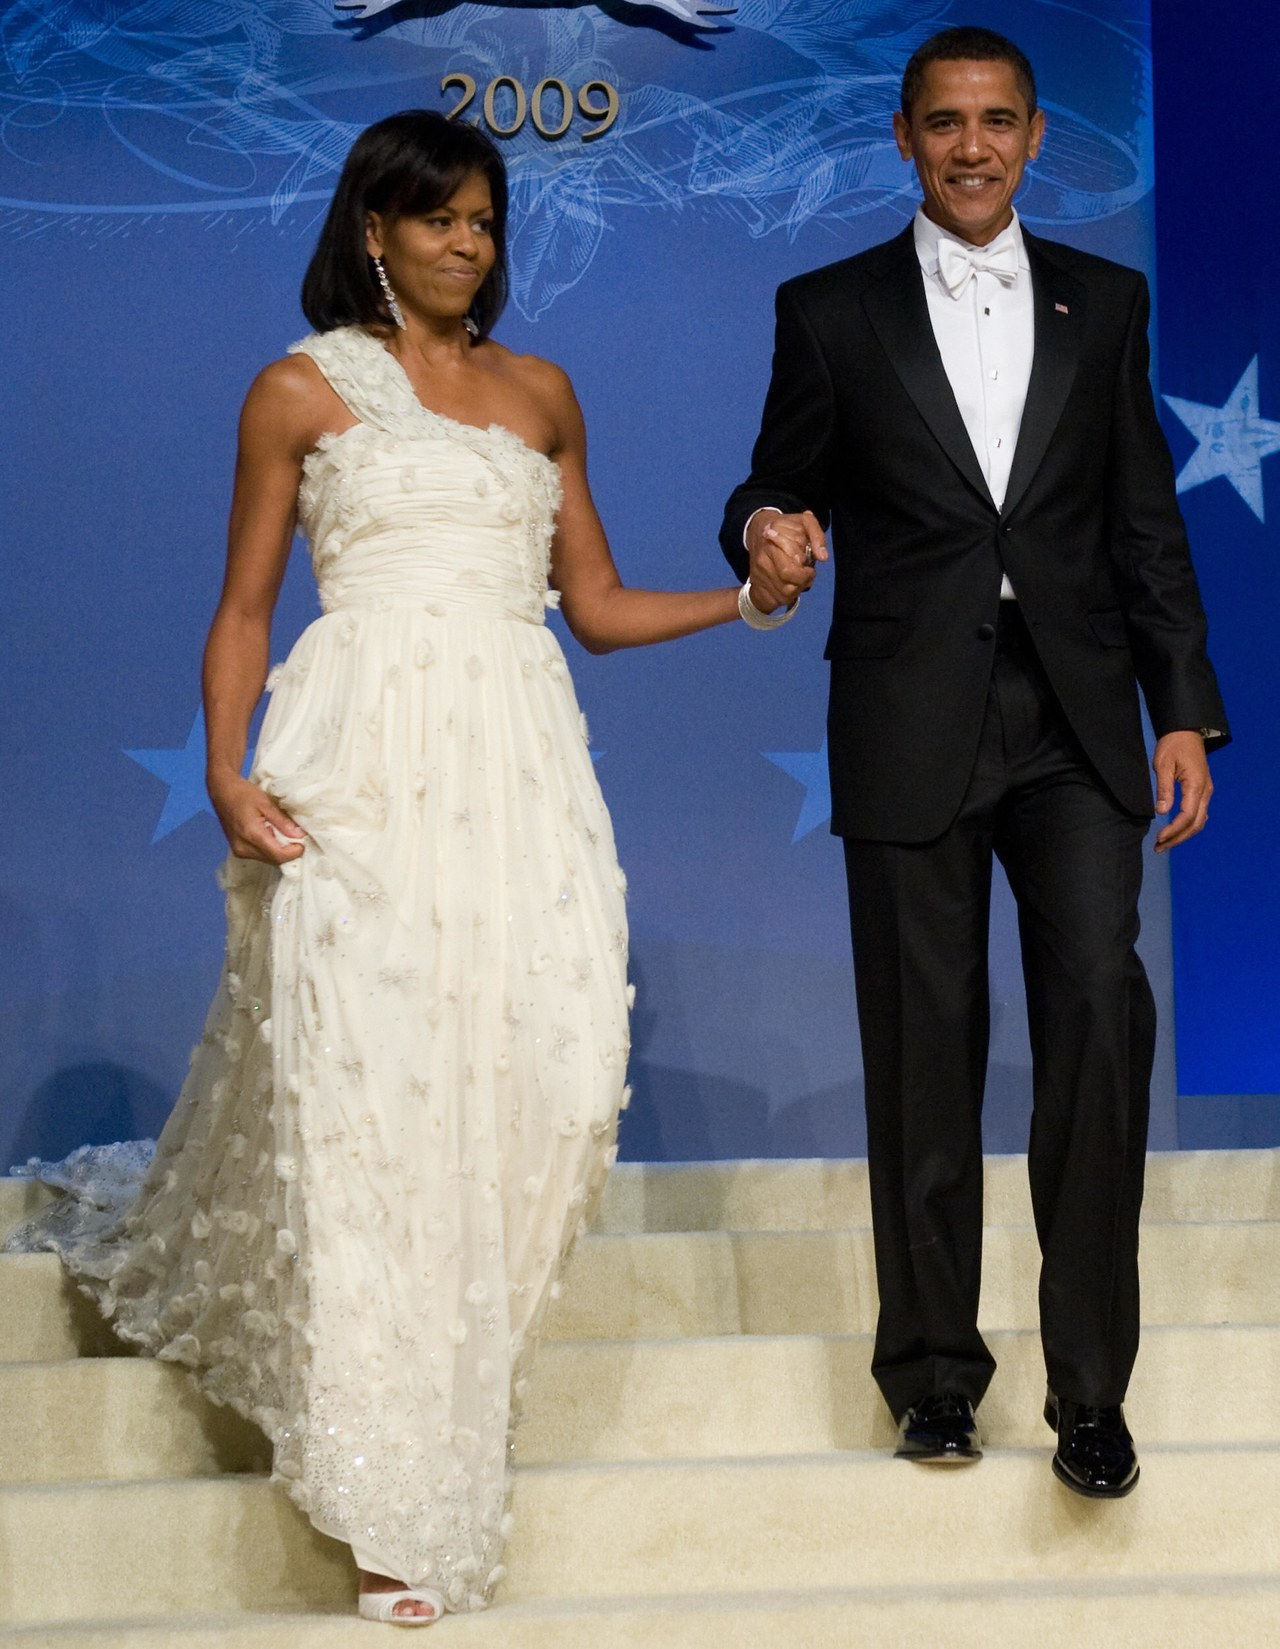 巴拉克 and Michelle Obama at their 2009 inaugural ball 